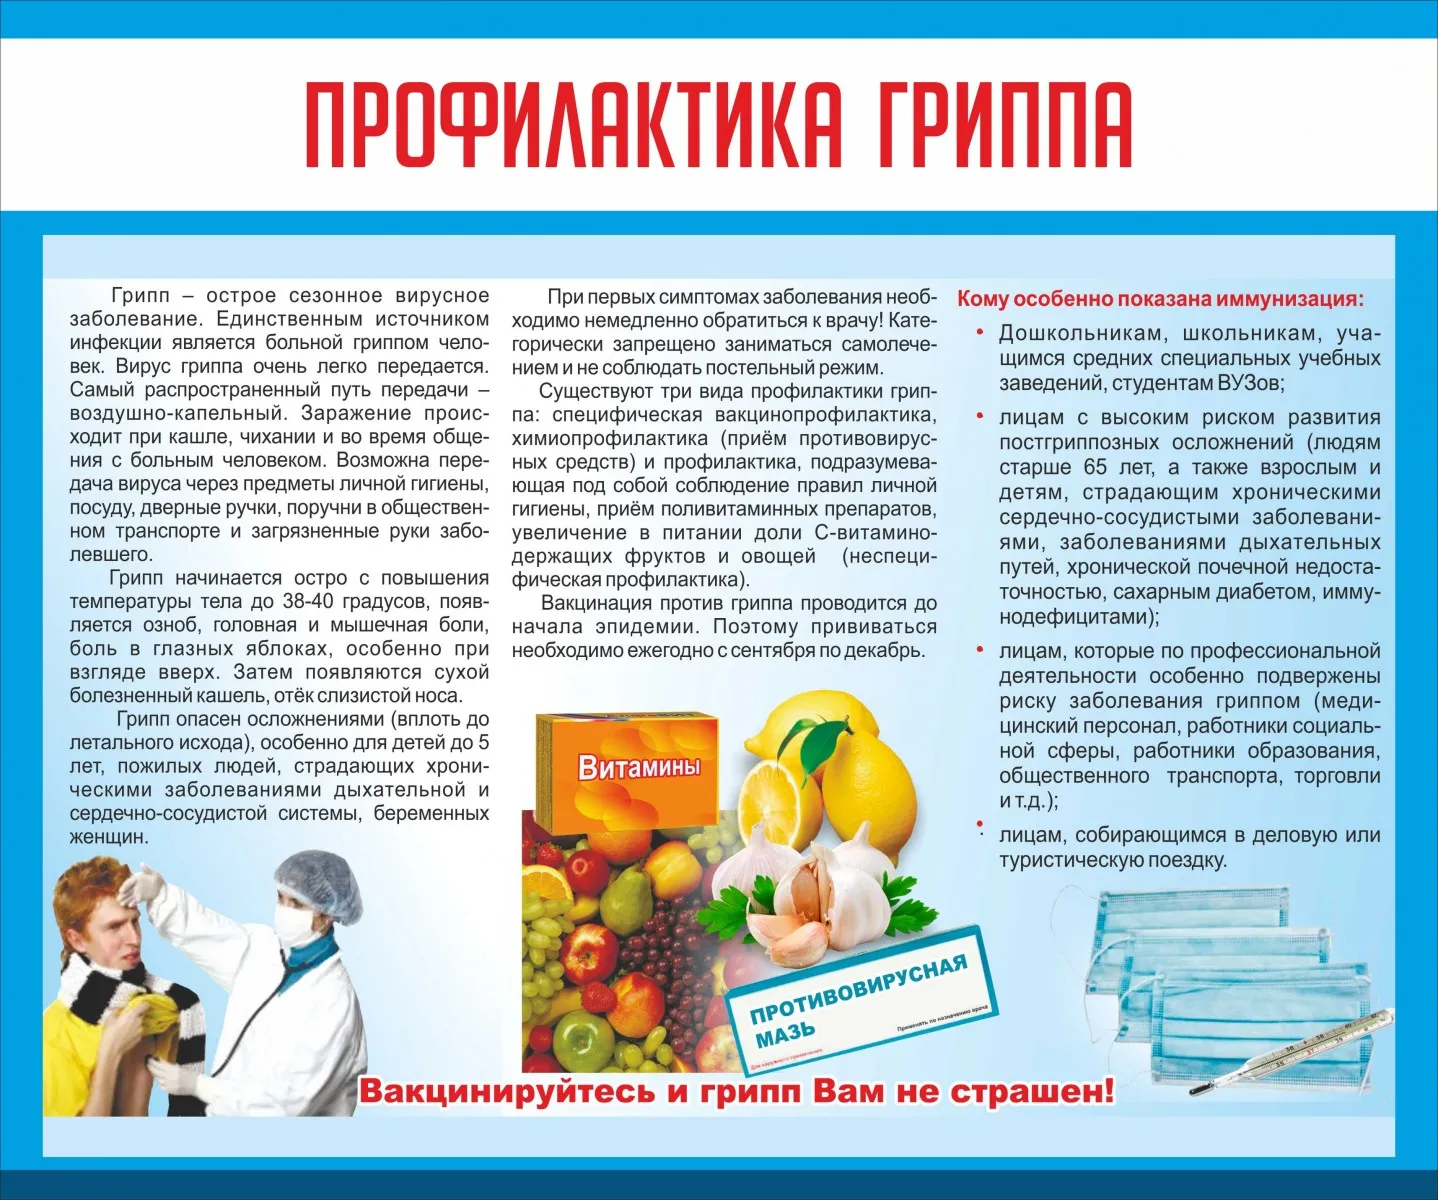 Профилактика гриппа, коронавирусной инфекции и других ОРВИ - Официальный сайт Тазовского района